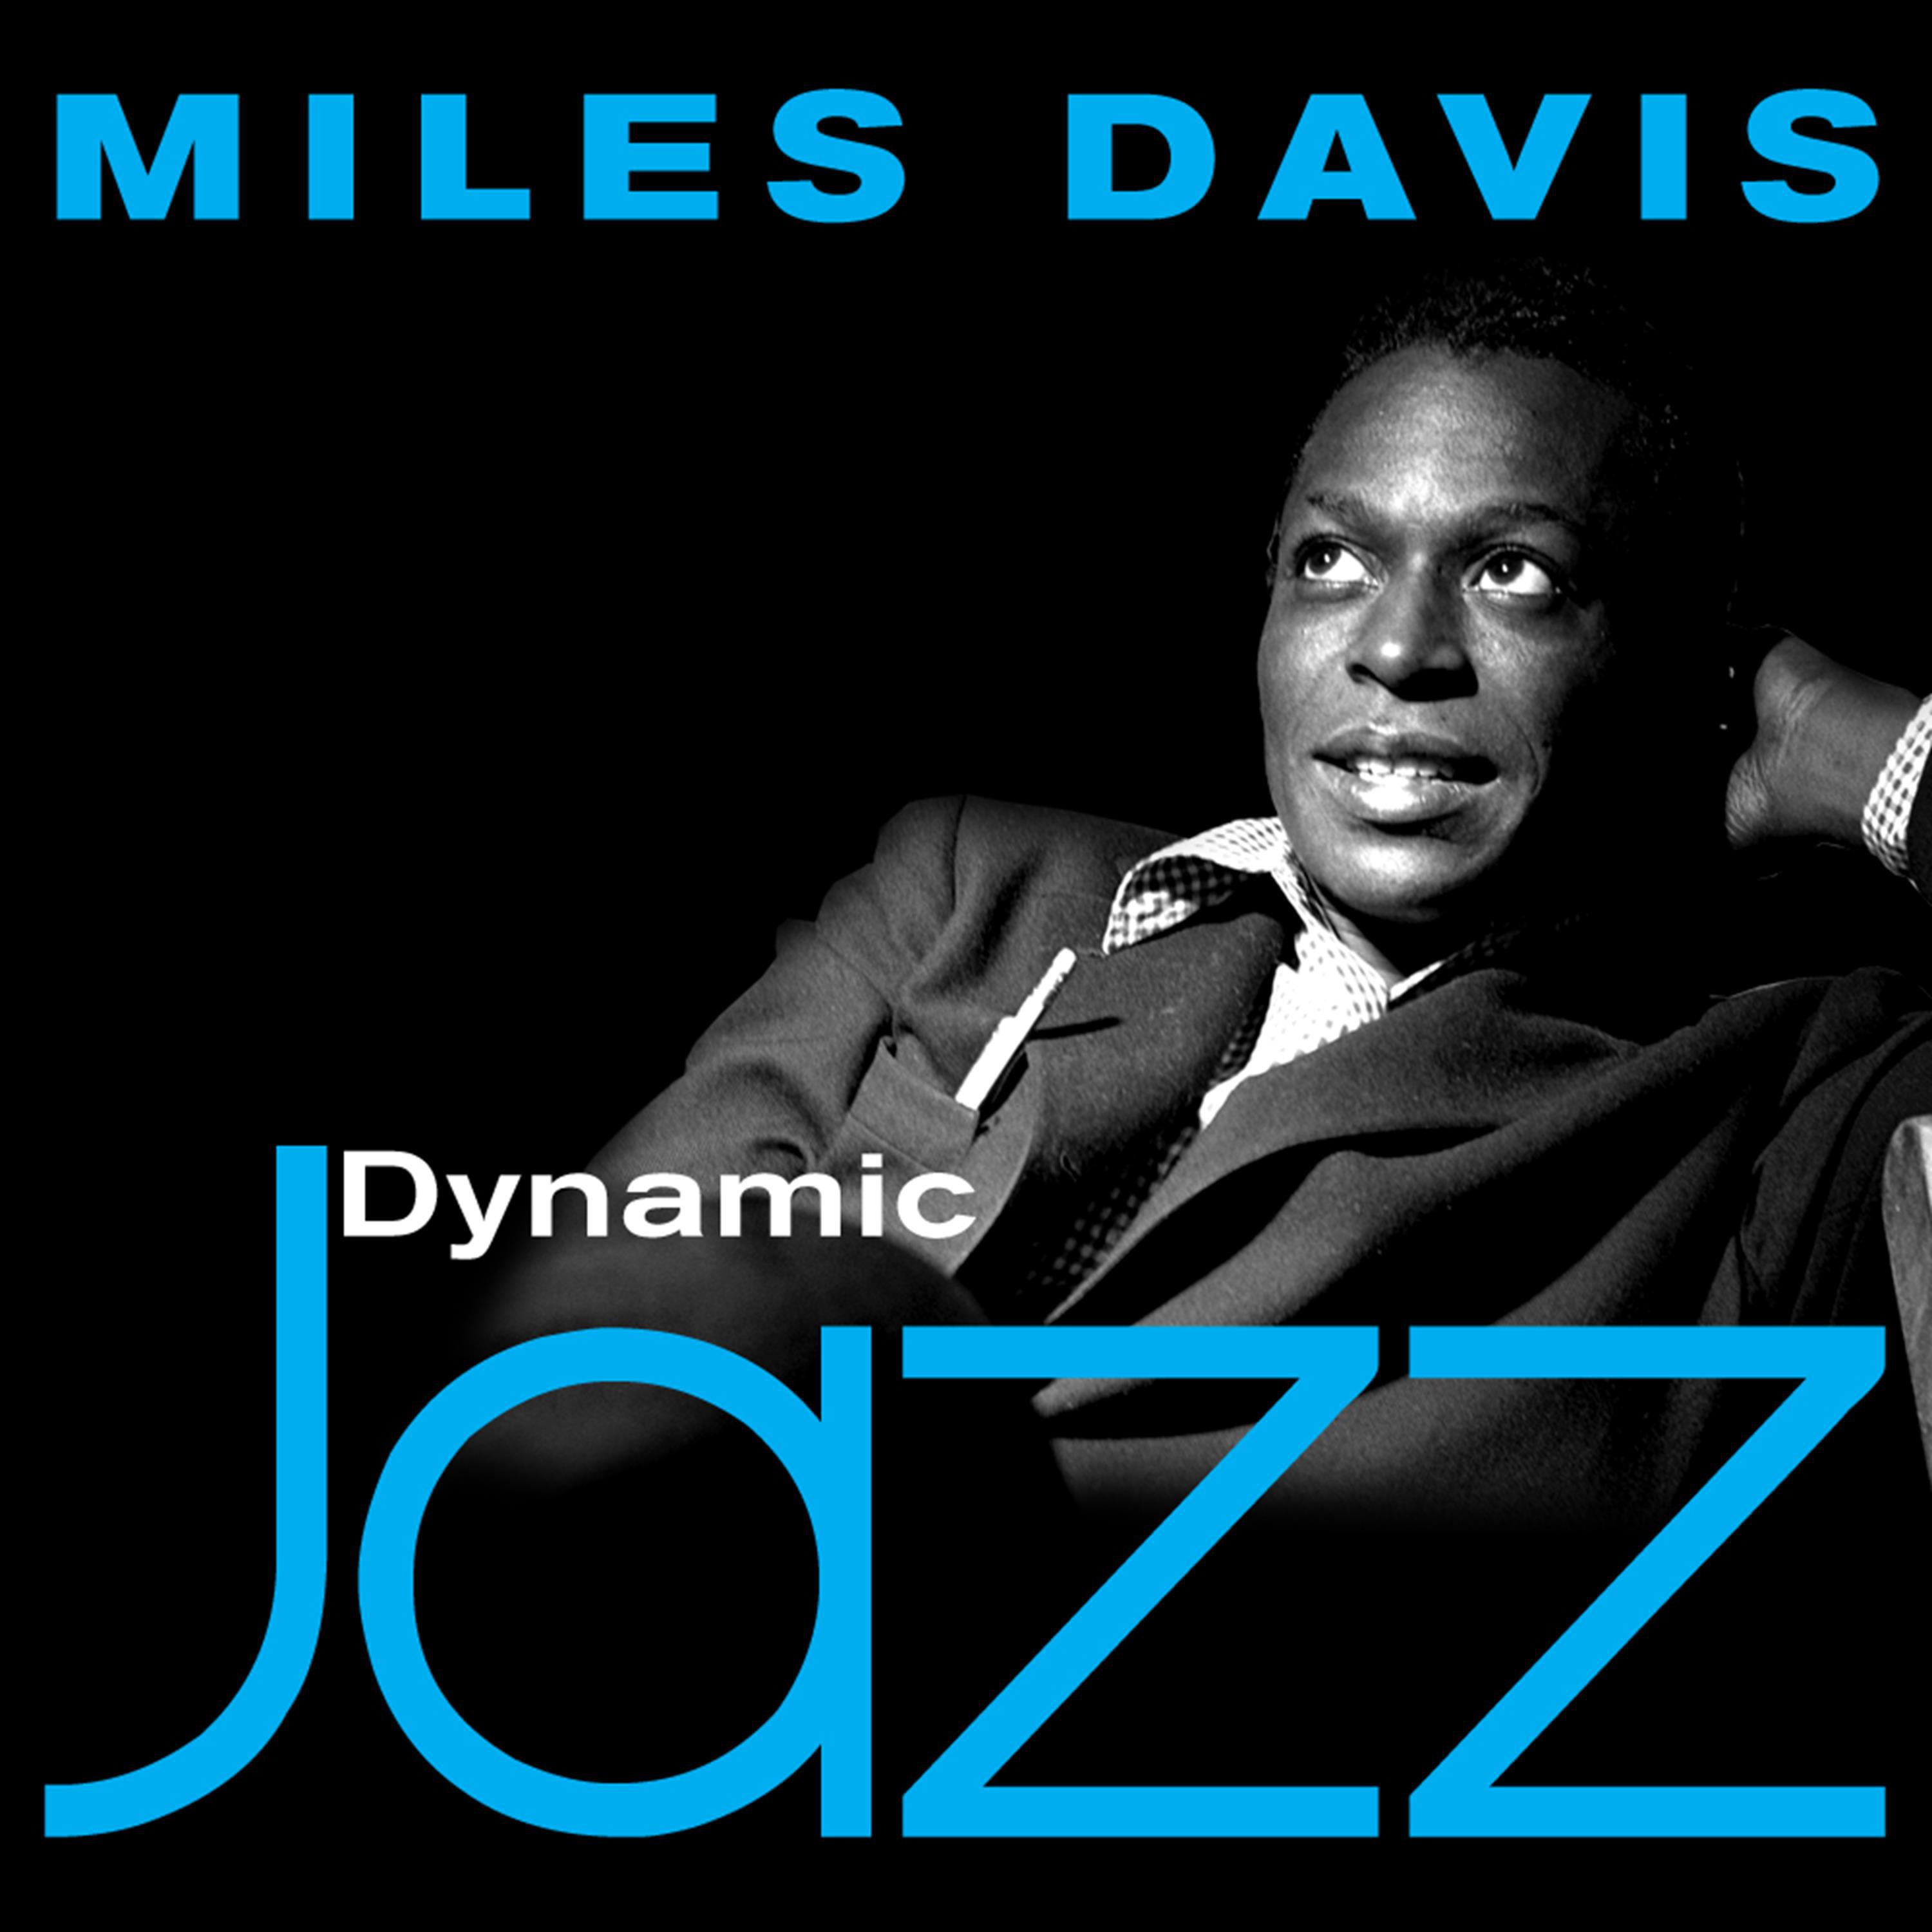 Dynamic Jazz - Miles Davis: 53 Essential Tracks